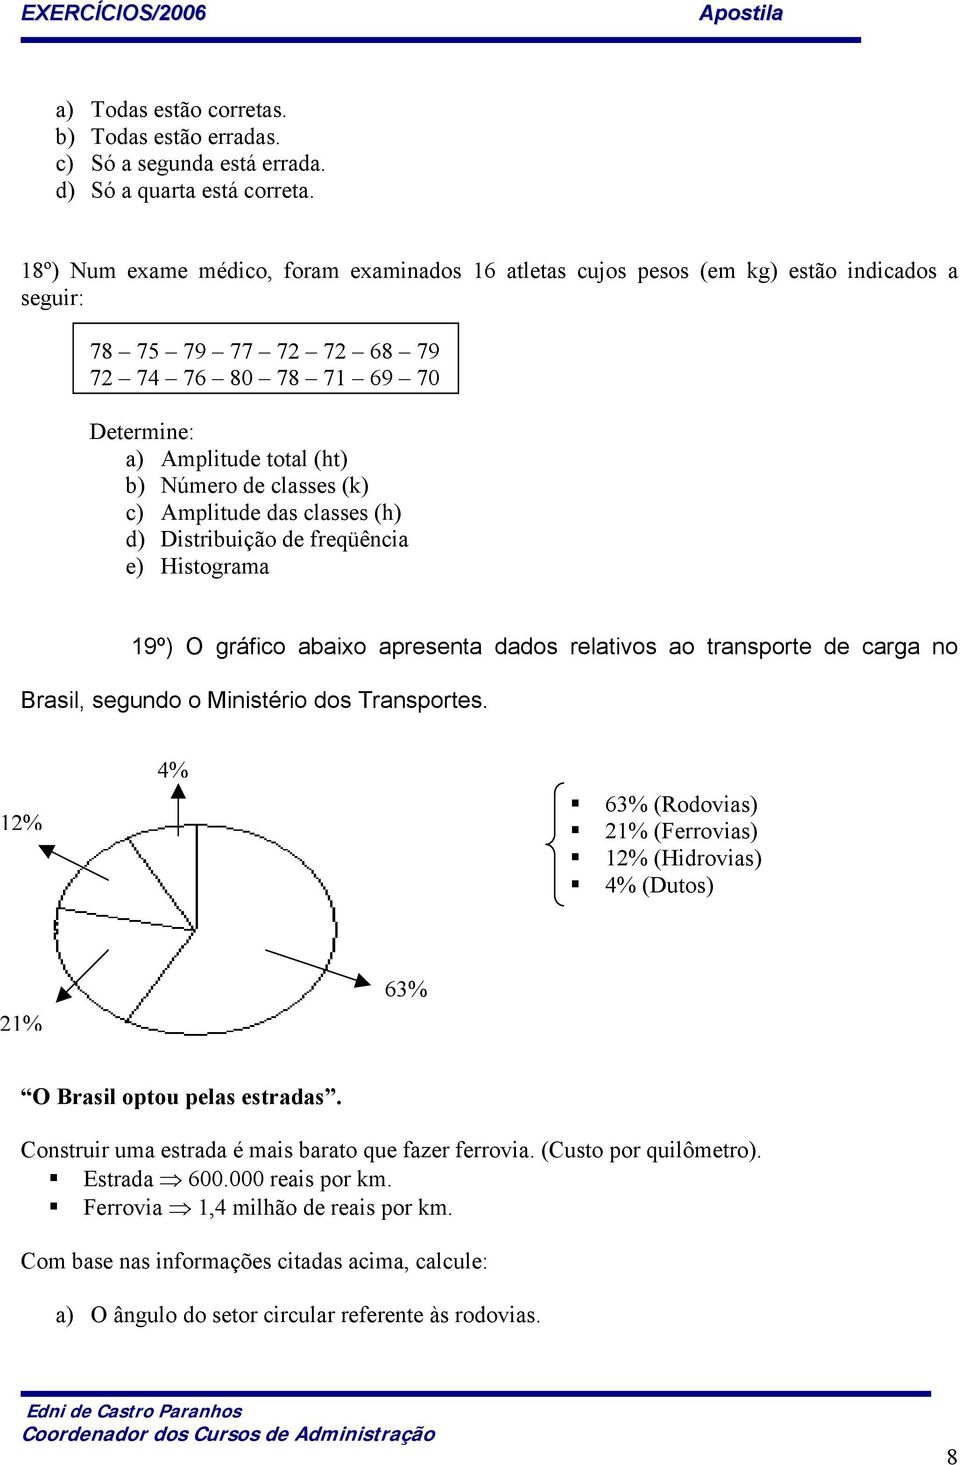 classes (k) c) Amplitude das classes (h) d) Distribuição de freqüência e) Histograma 19º) O gráfico abaixo apresenta dados relativos ao transporte de carga no Brasil, segundo o Ministério dos